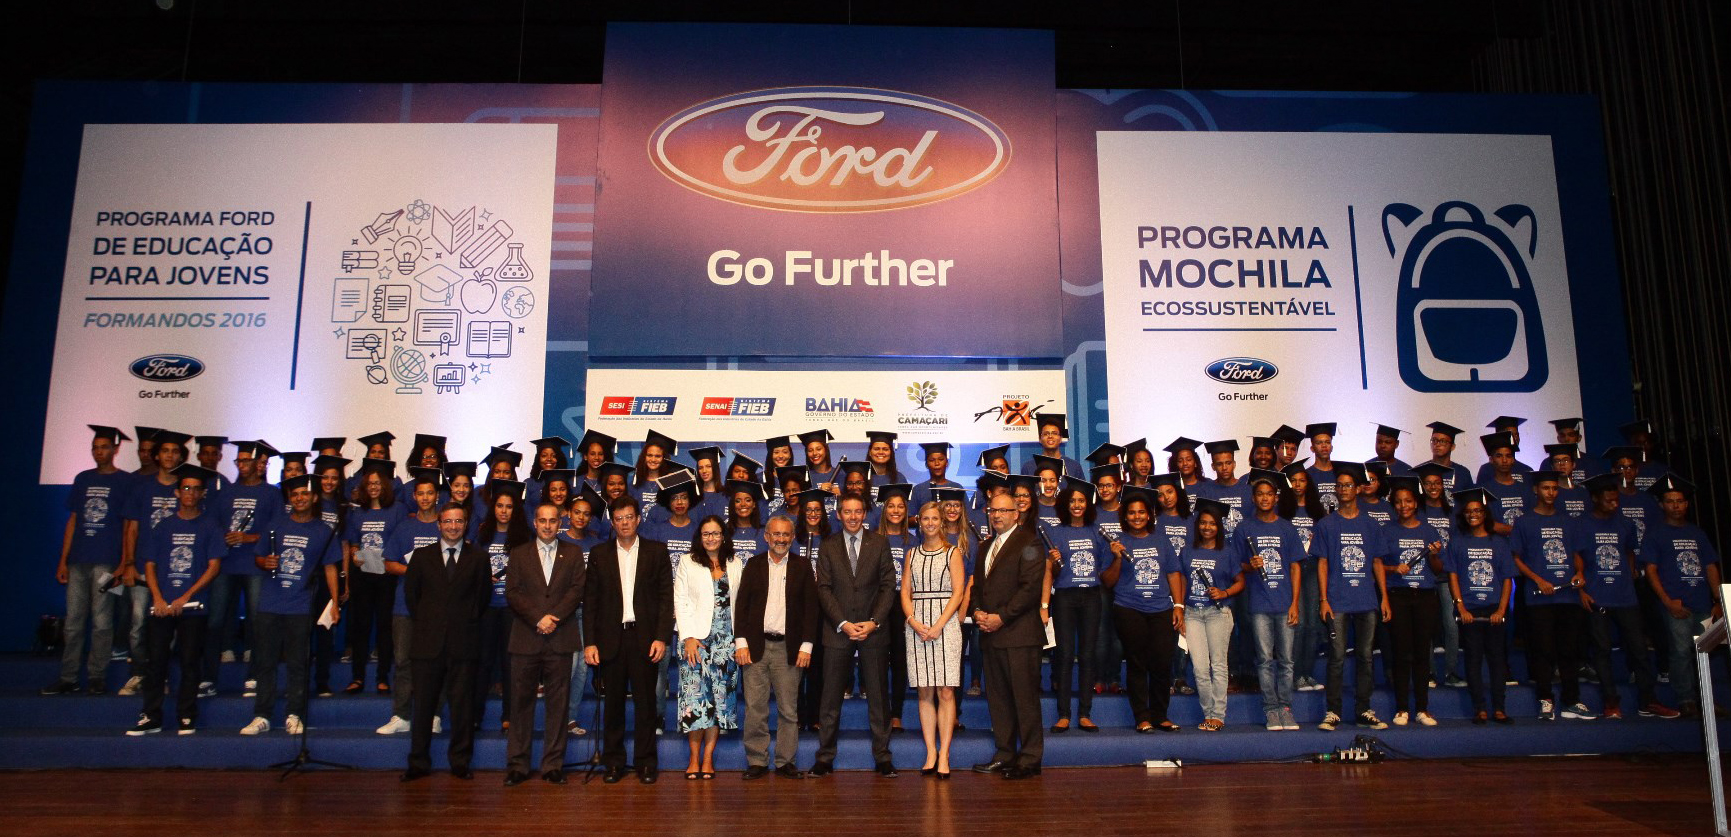 Ford lança programa de educação para jovens na BA com foco no mercado de trabalho